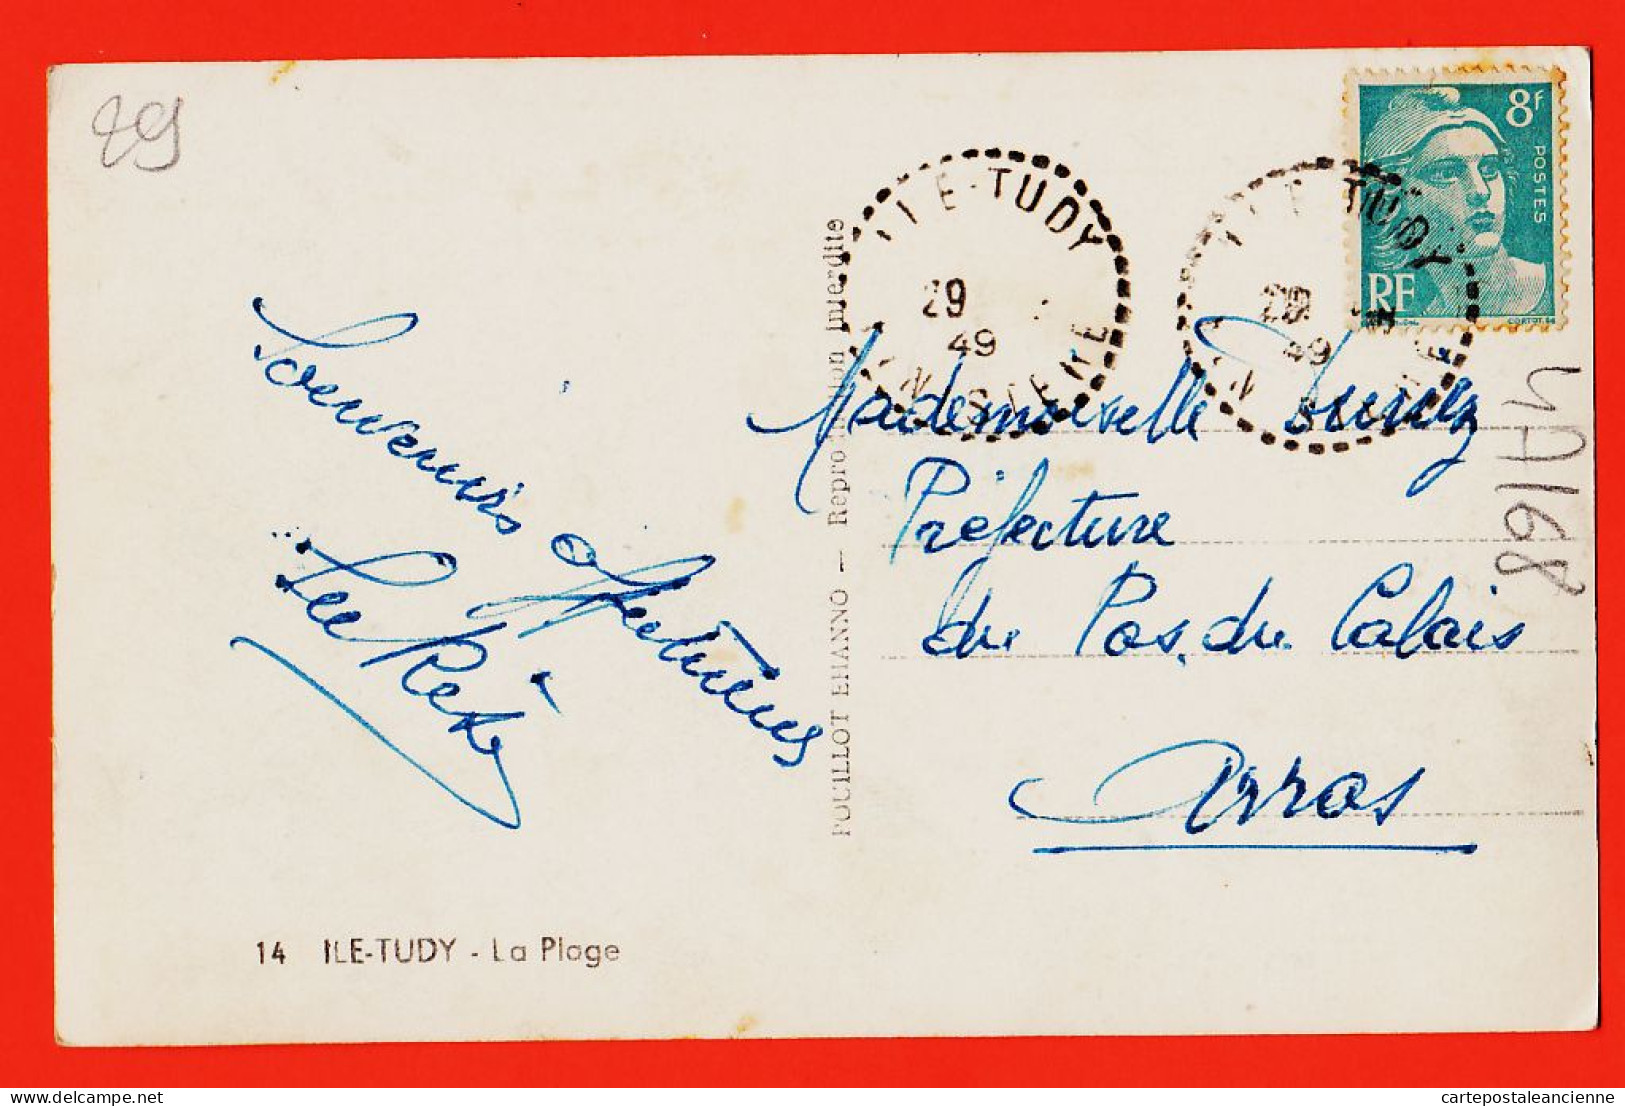 11134 / ILE TUDY (29) La PLAGE Scène De Bains 1949 à DURIEZ Préfecture Arras Photo-Bromure 14x9 POUILLOT EHANNO - Ile Tudy